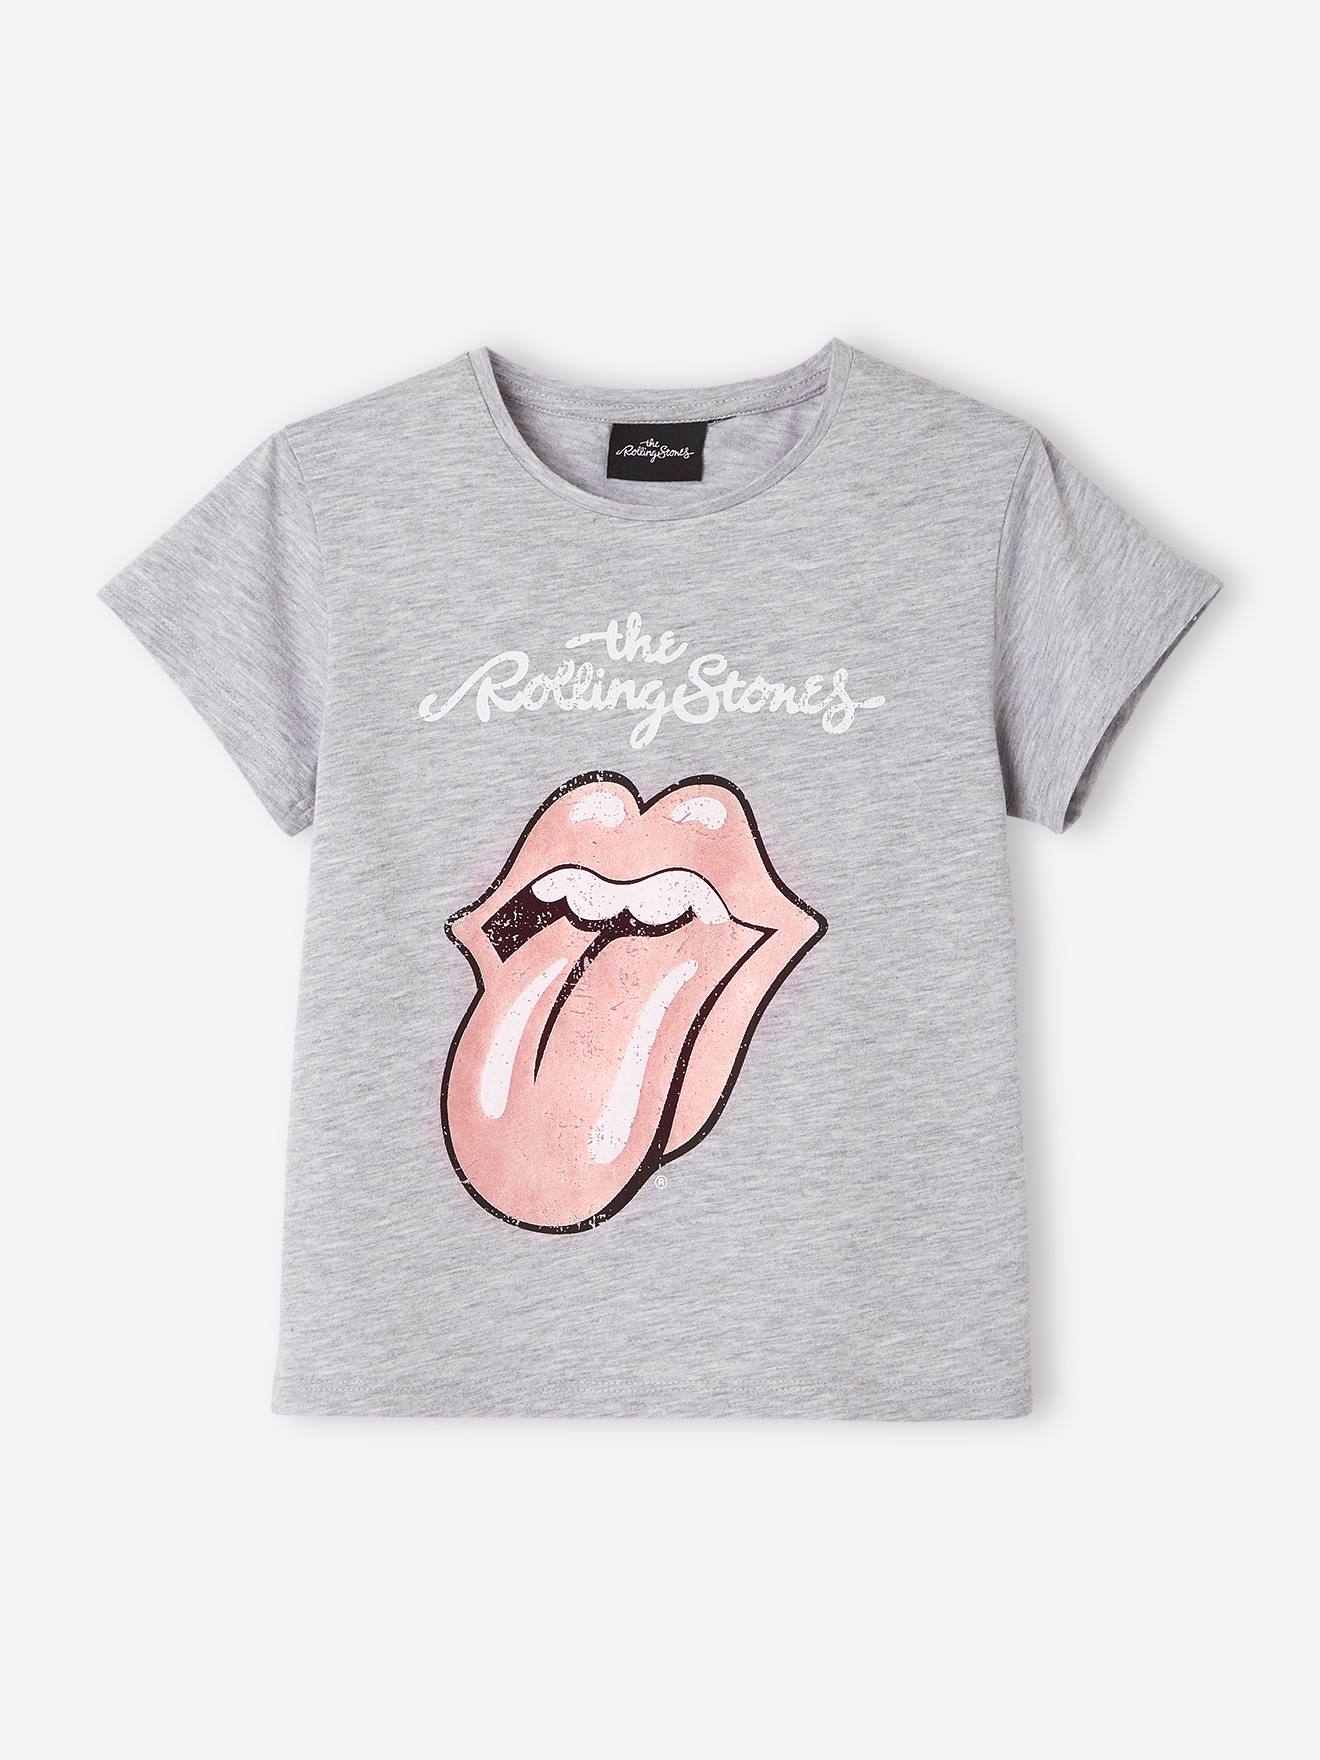 Meisjesshirt The Rolling Stones¨, met korte mouwen medium grijs gechineerd